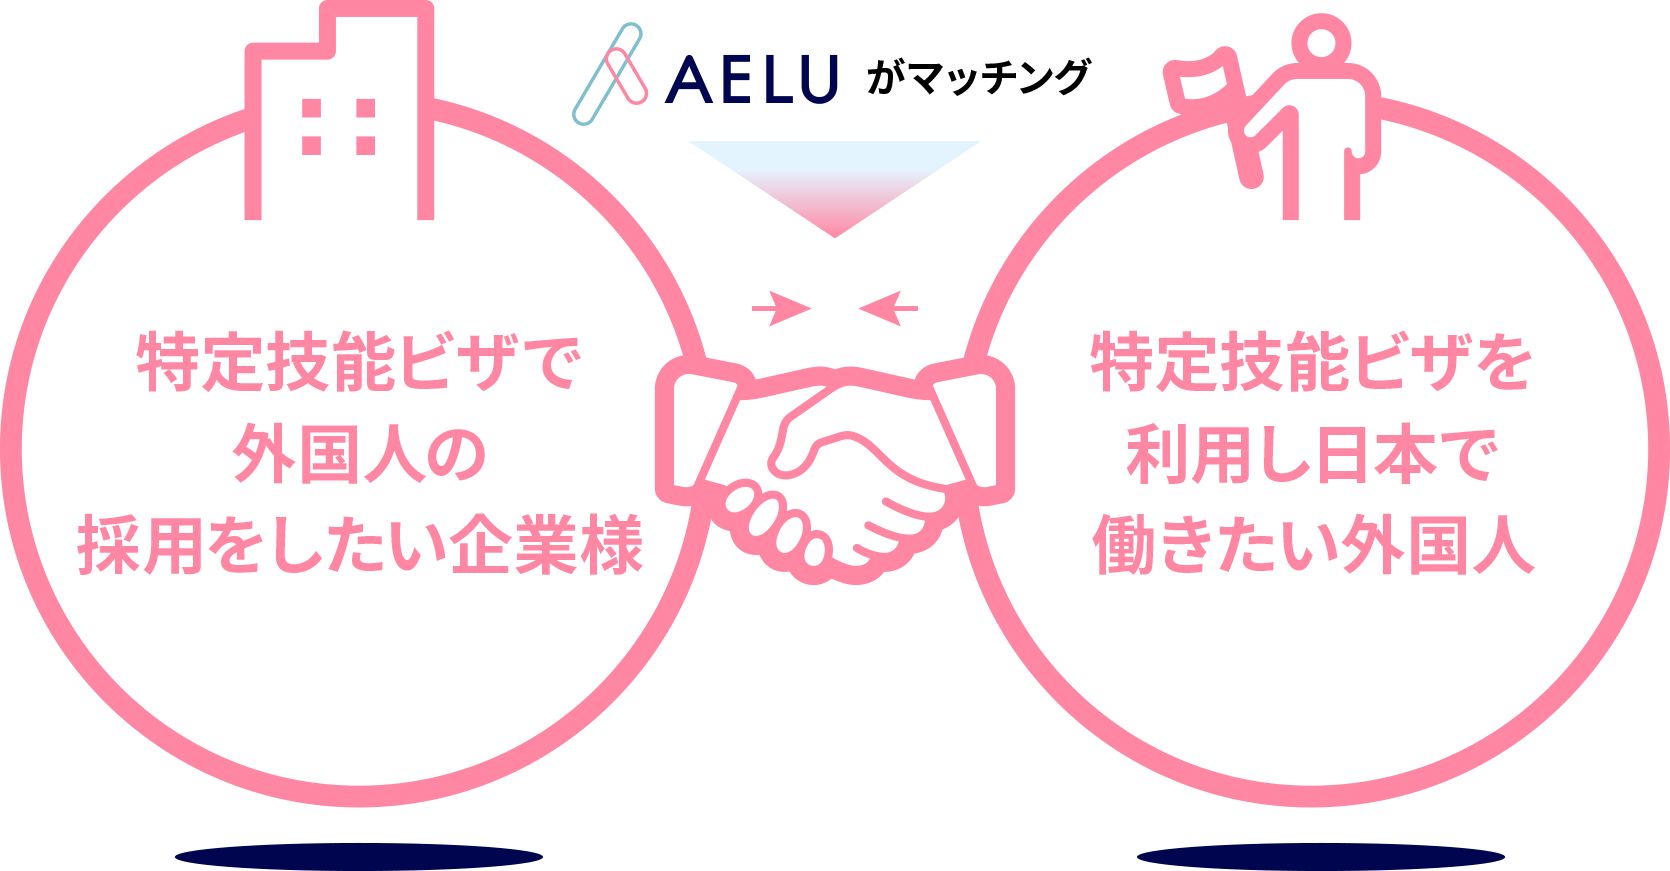 特定技能ビザで外国人の採用をしたい企業様と特定技能ビザを利用し日本で働きたい外国人をAELUがマッチング